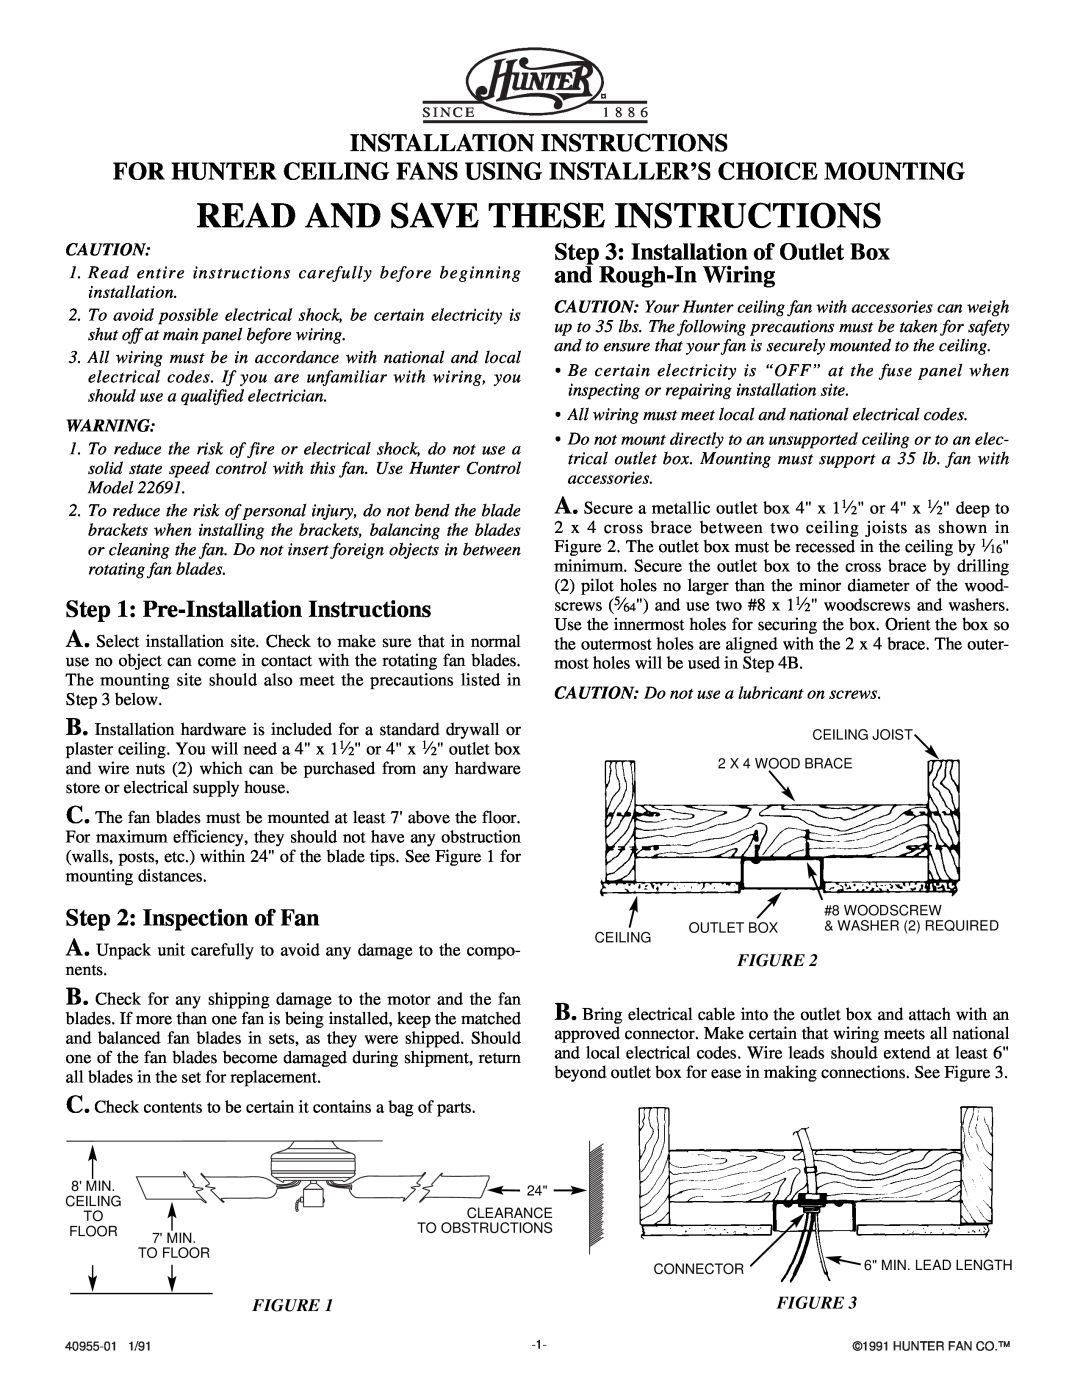 Hunter Fan 40955-01 installation instructions Pre-InstallationInstructions, Inspection of Fan, Installation Instructions 